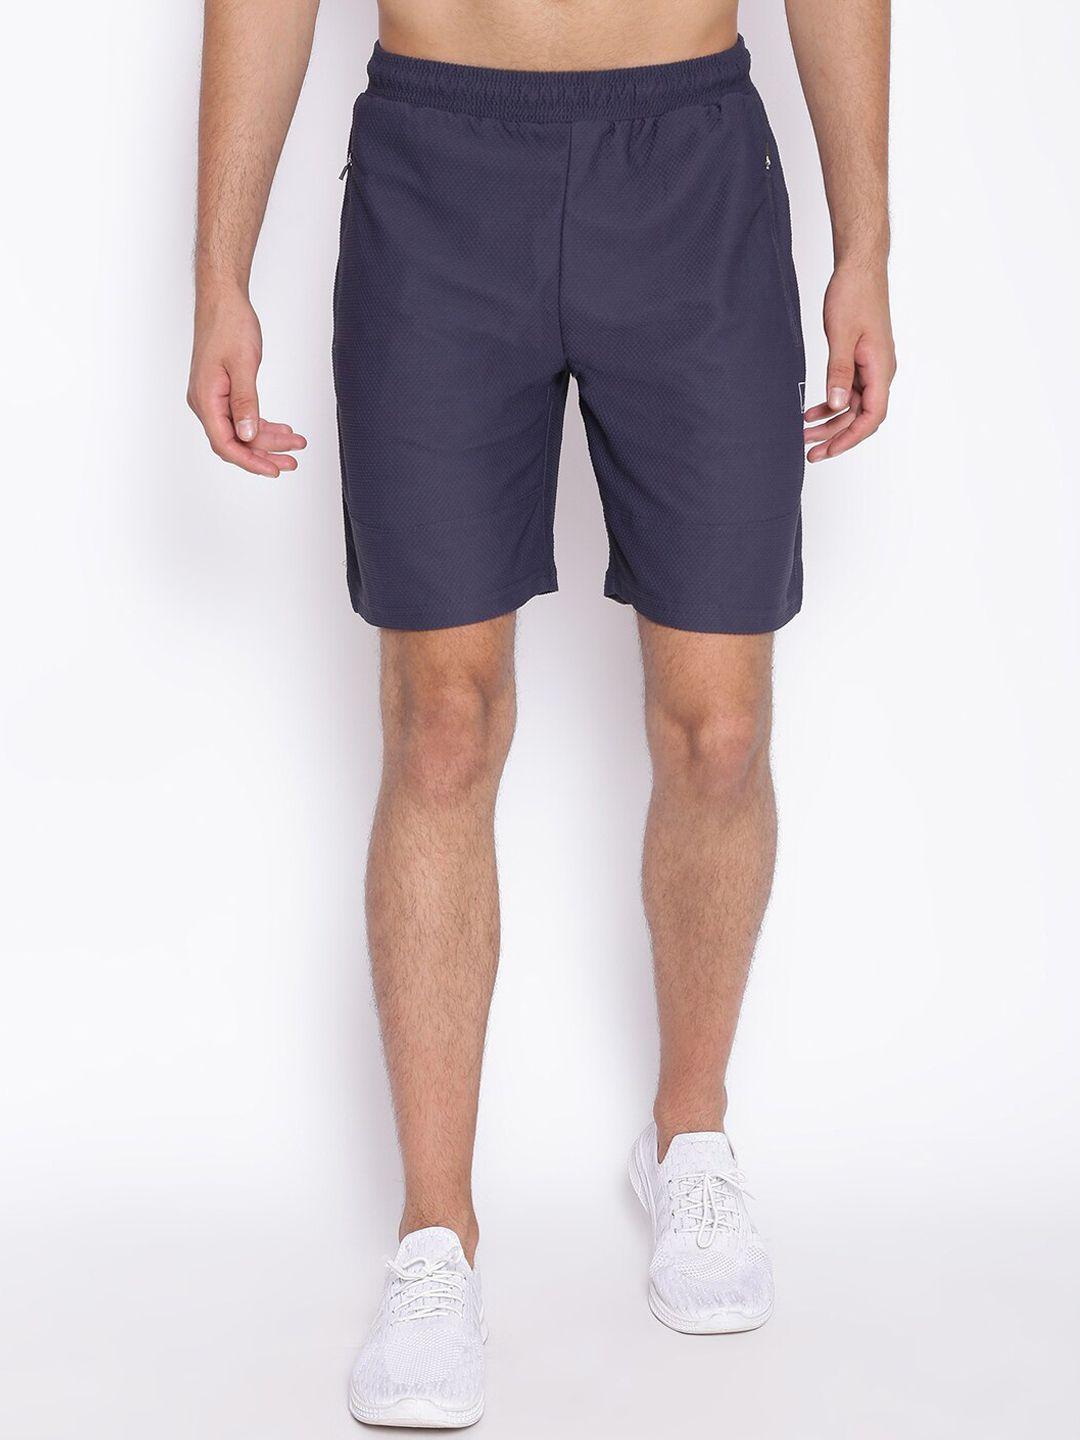 unpar men purple outdoor sports shorts